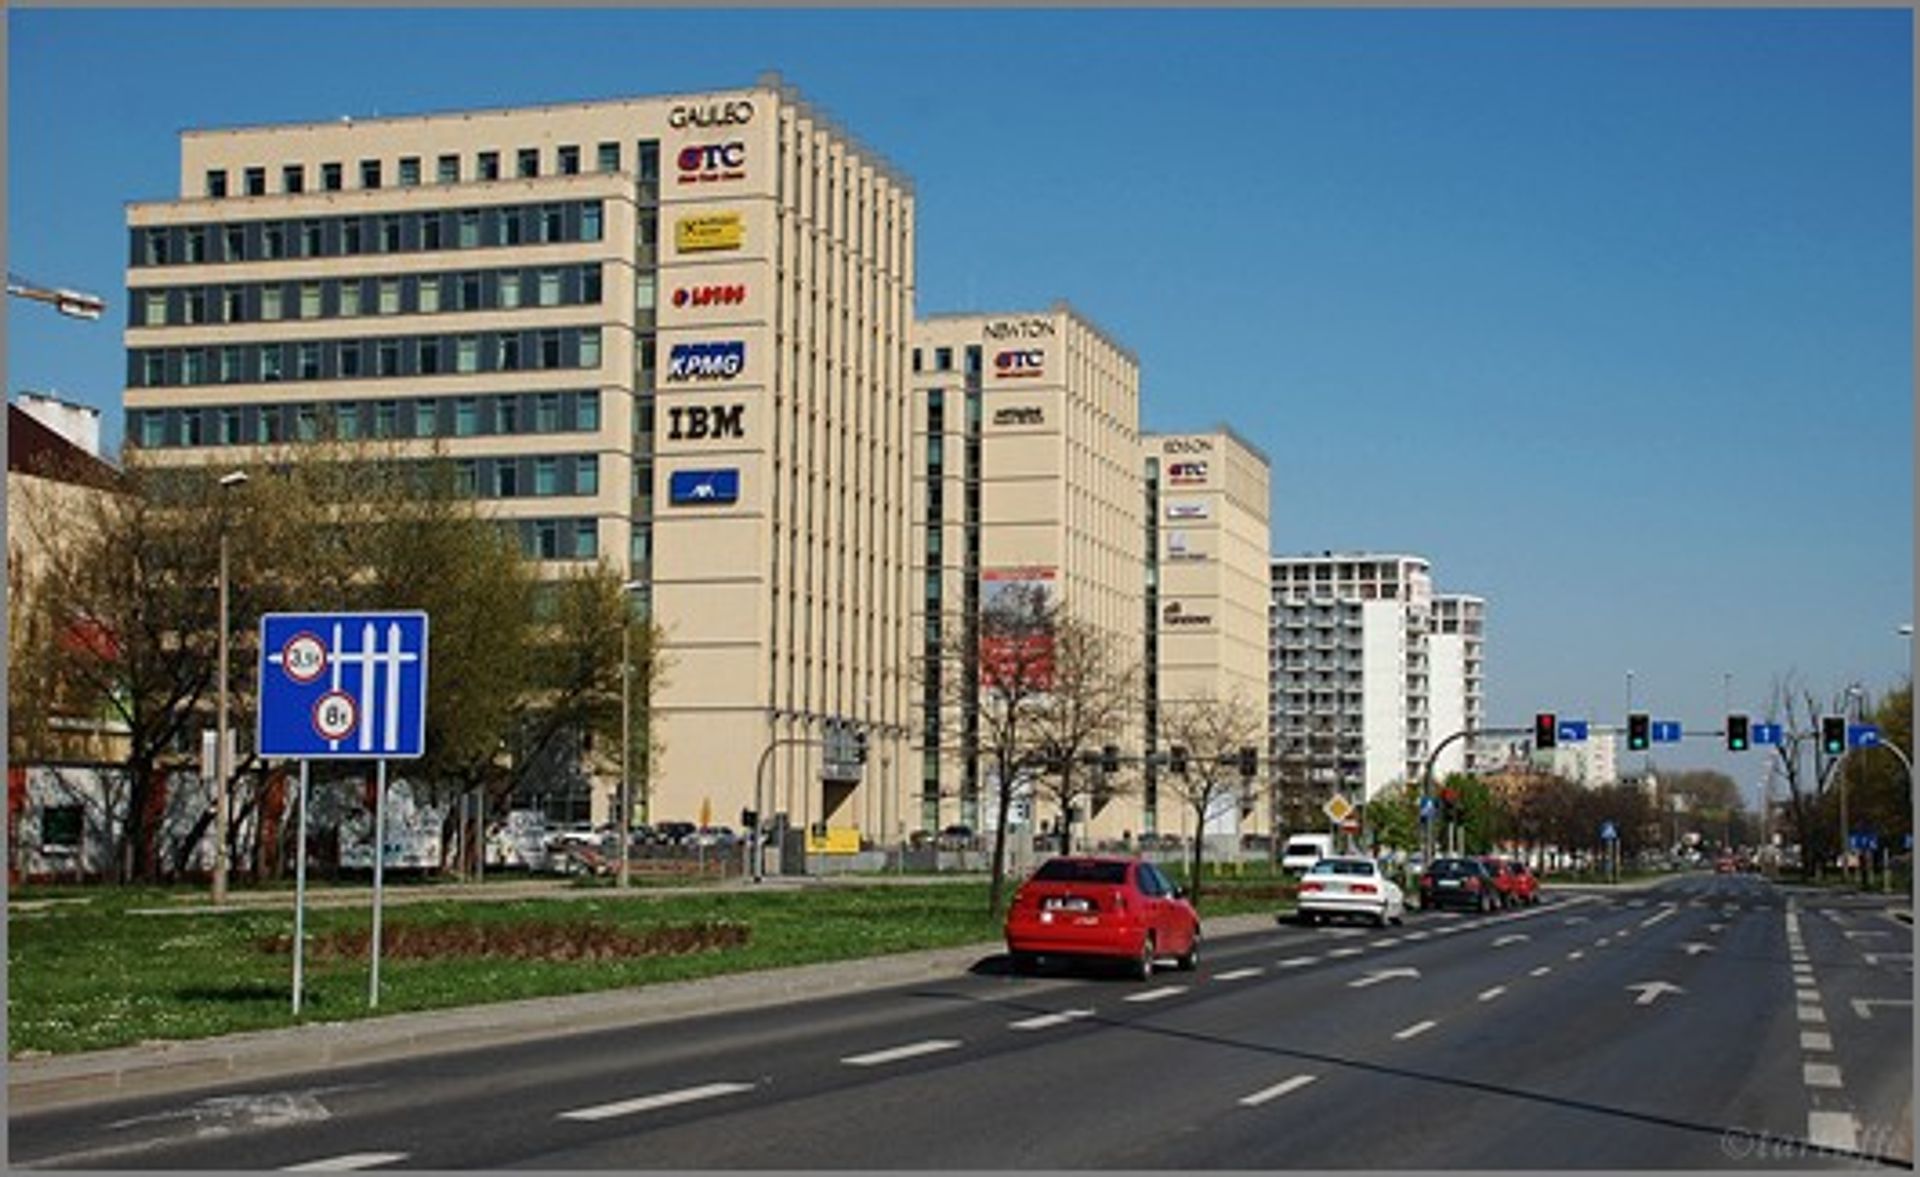  Zrównoważony wzrost rynku biurowego w Krakowie